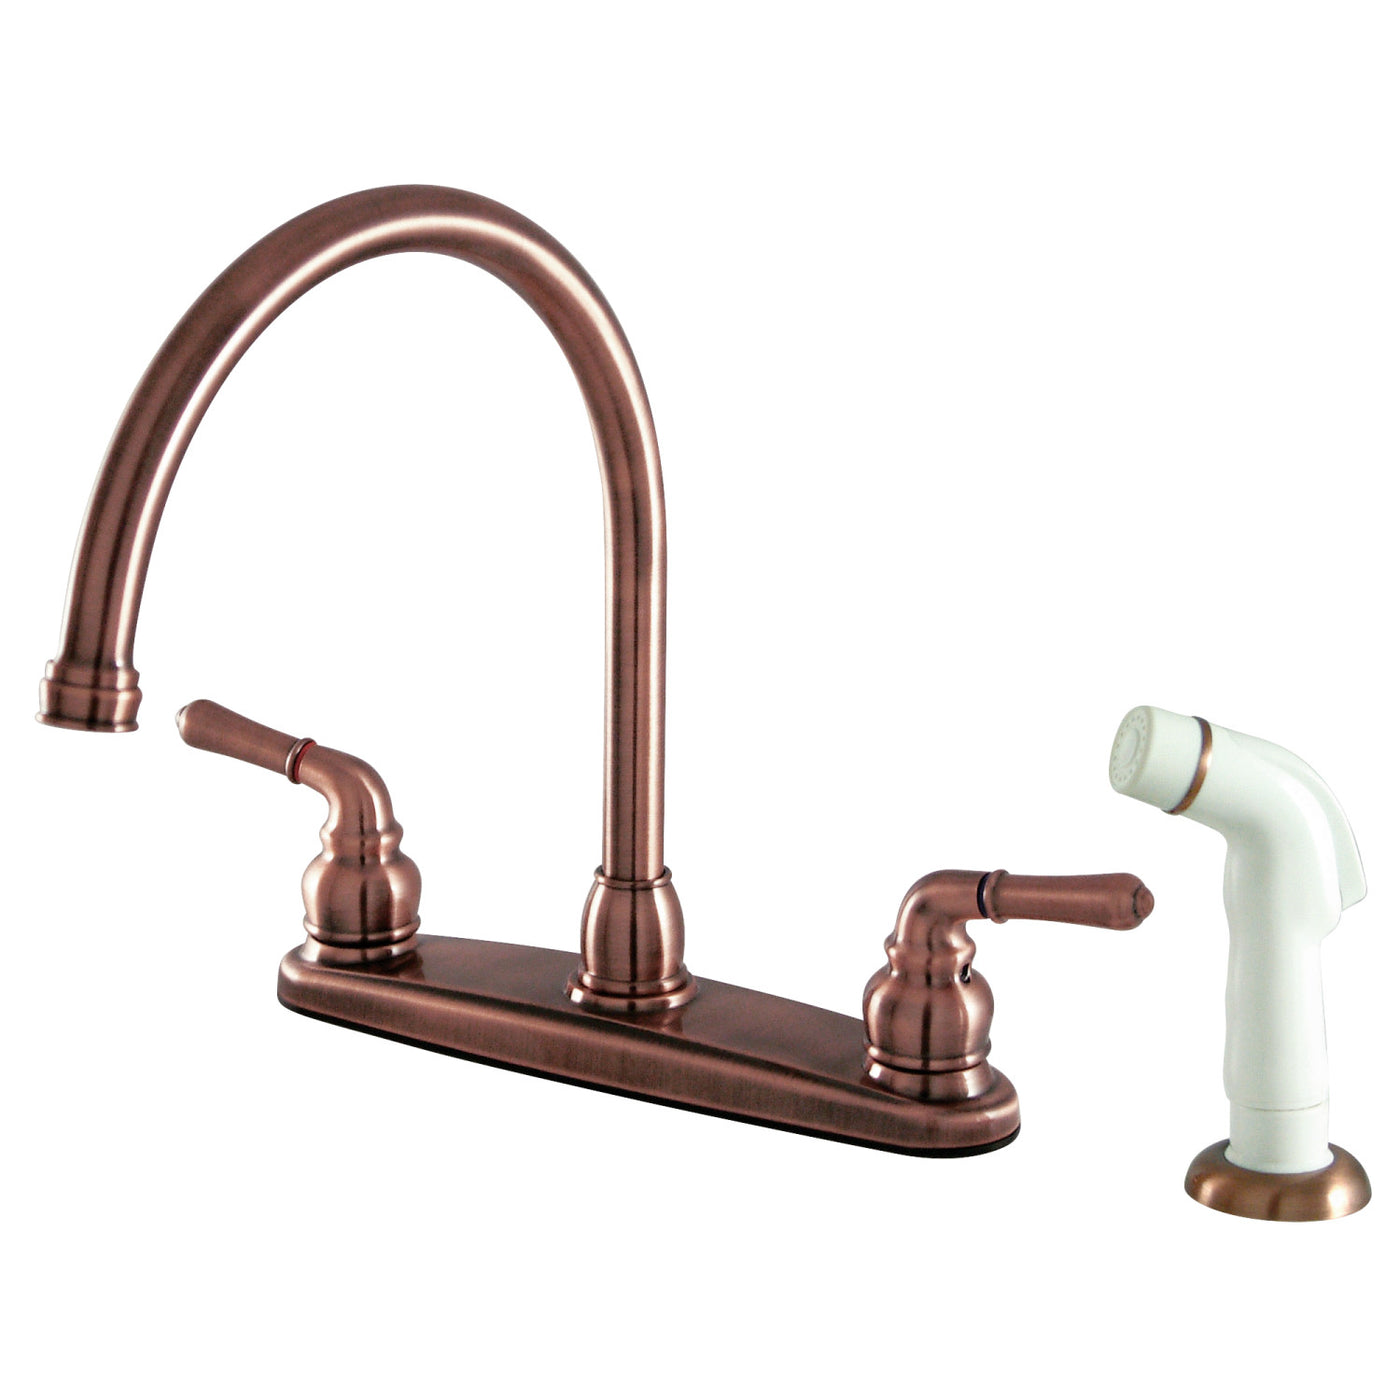 Elements of Design EB796 8-Inch Centerset Kitchen Faucet, Antique Copper